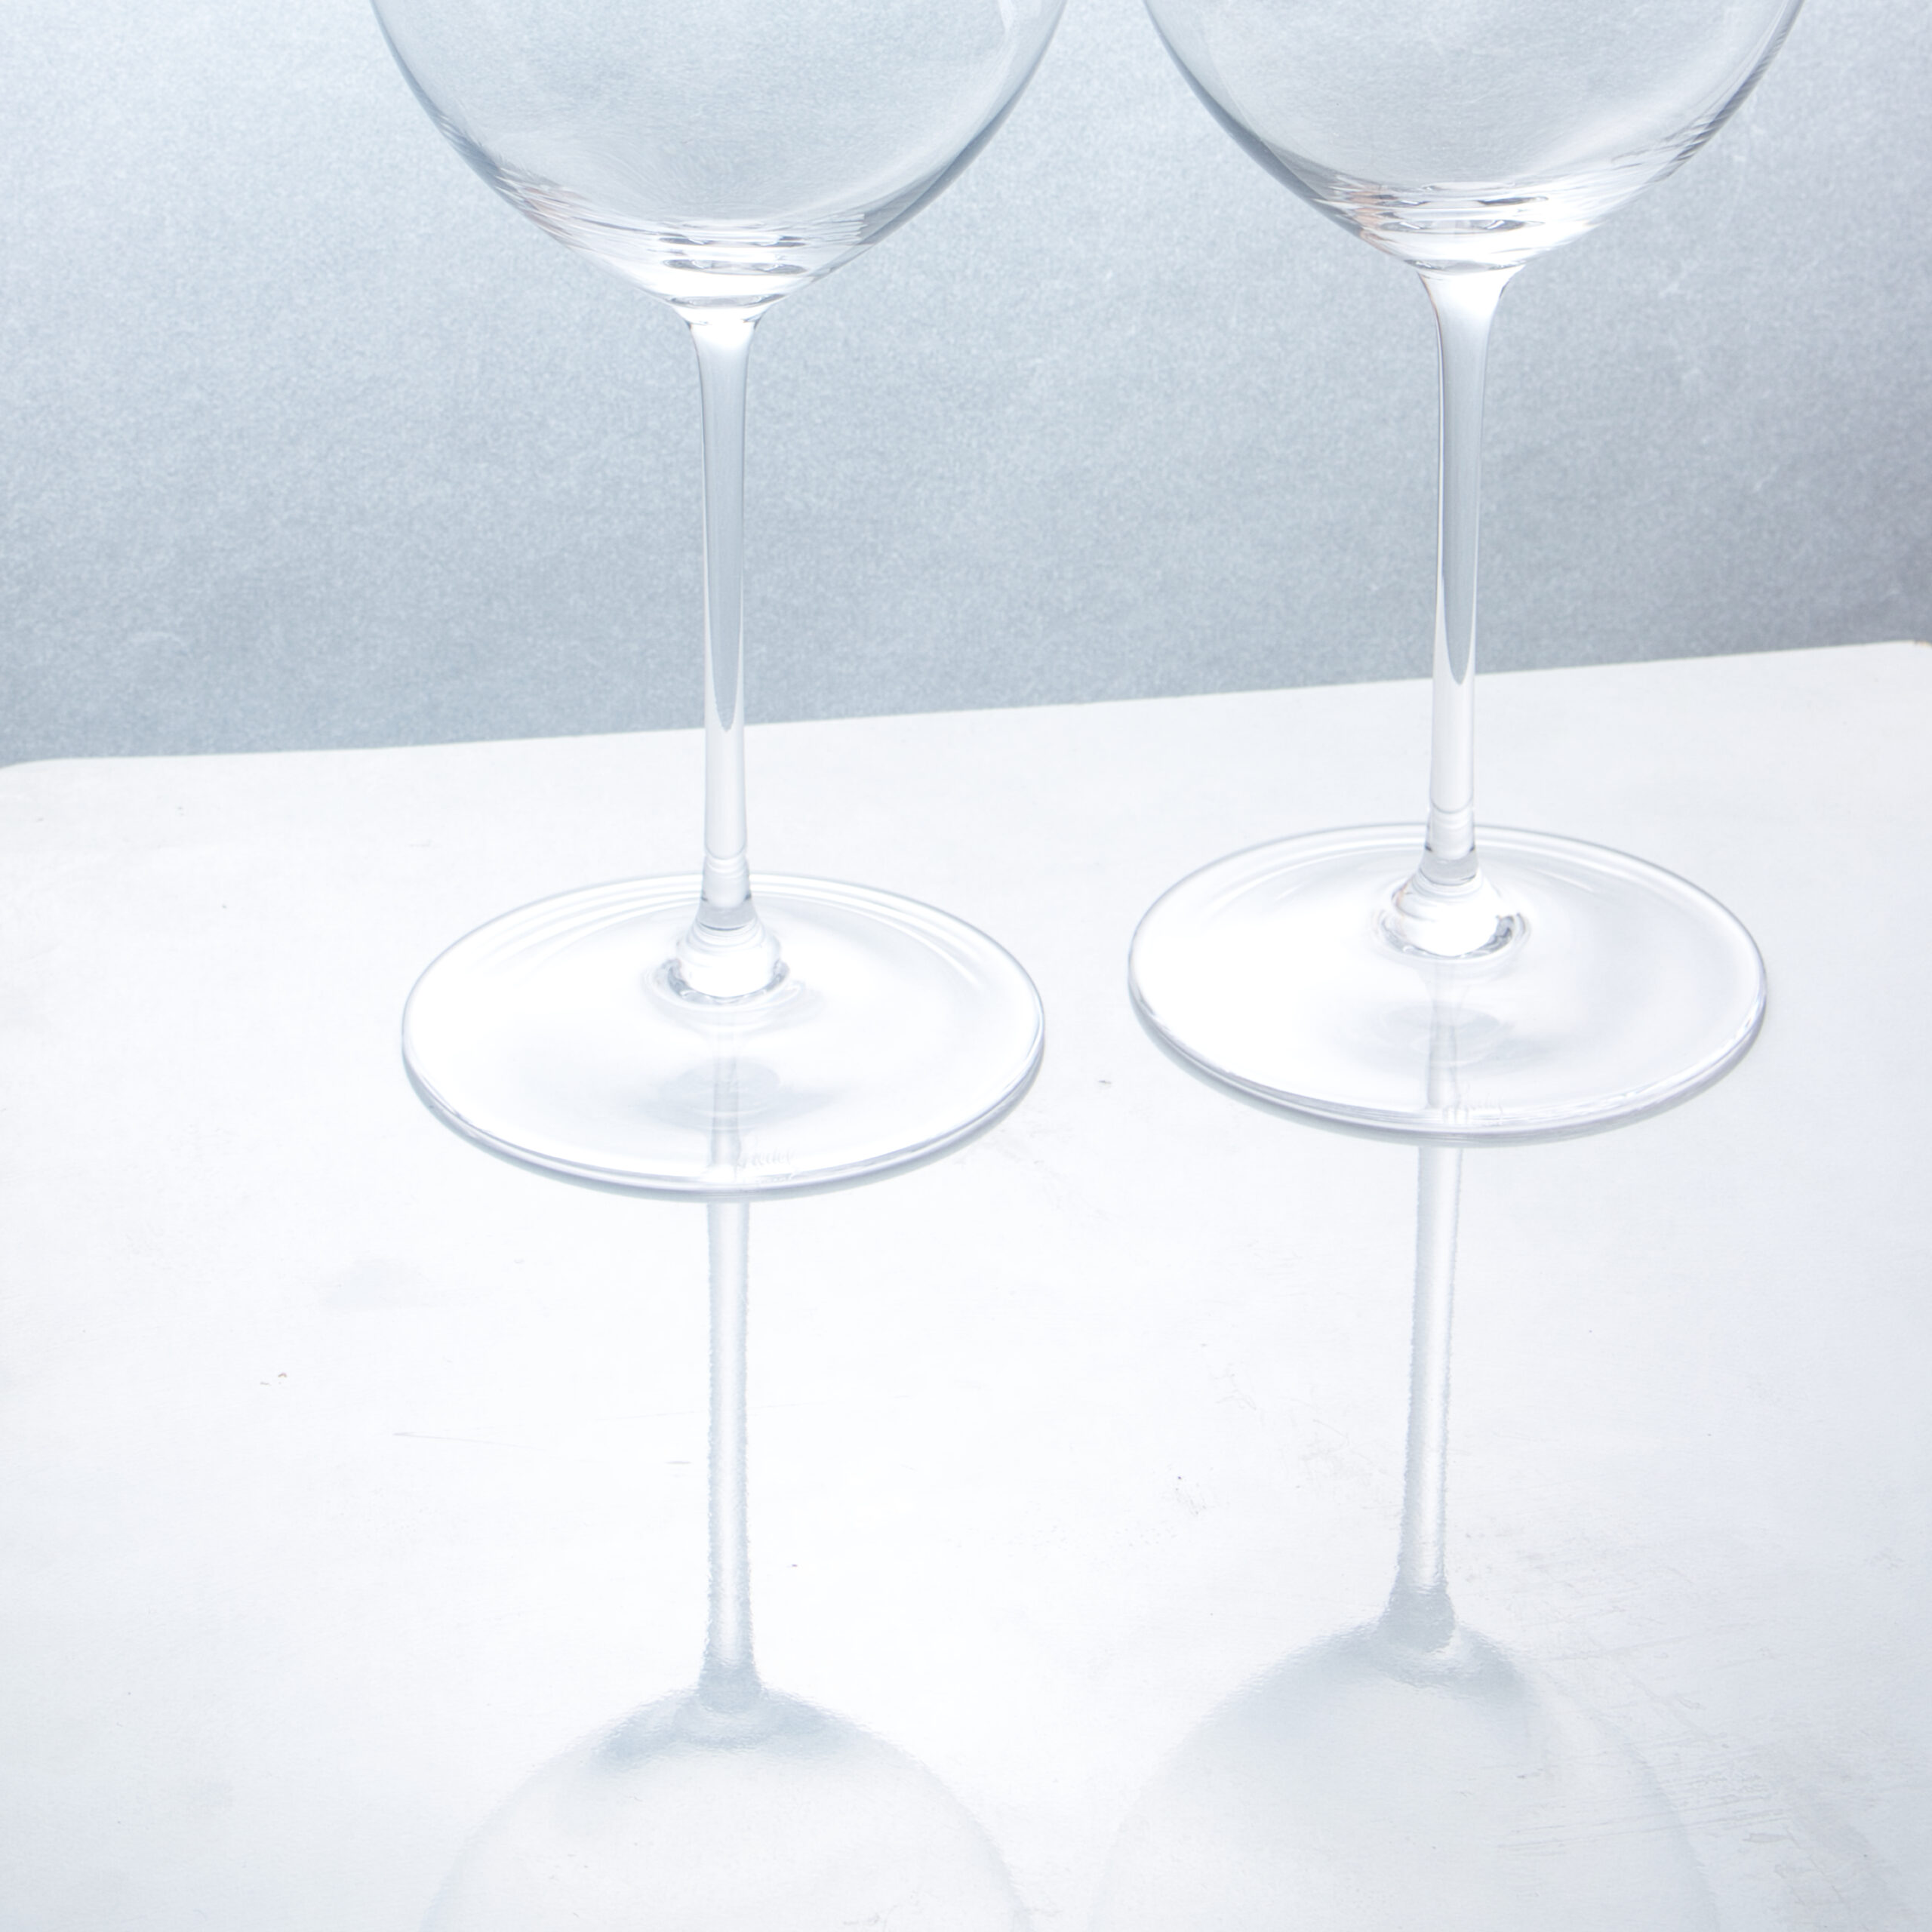 ウイスキーグラスやワイングラス 容量や薄さ等のデータ一覧 ウイスキーと成長するブログ